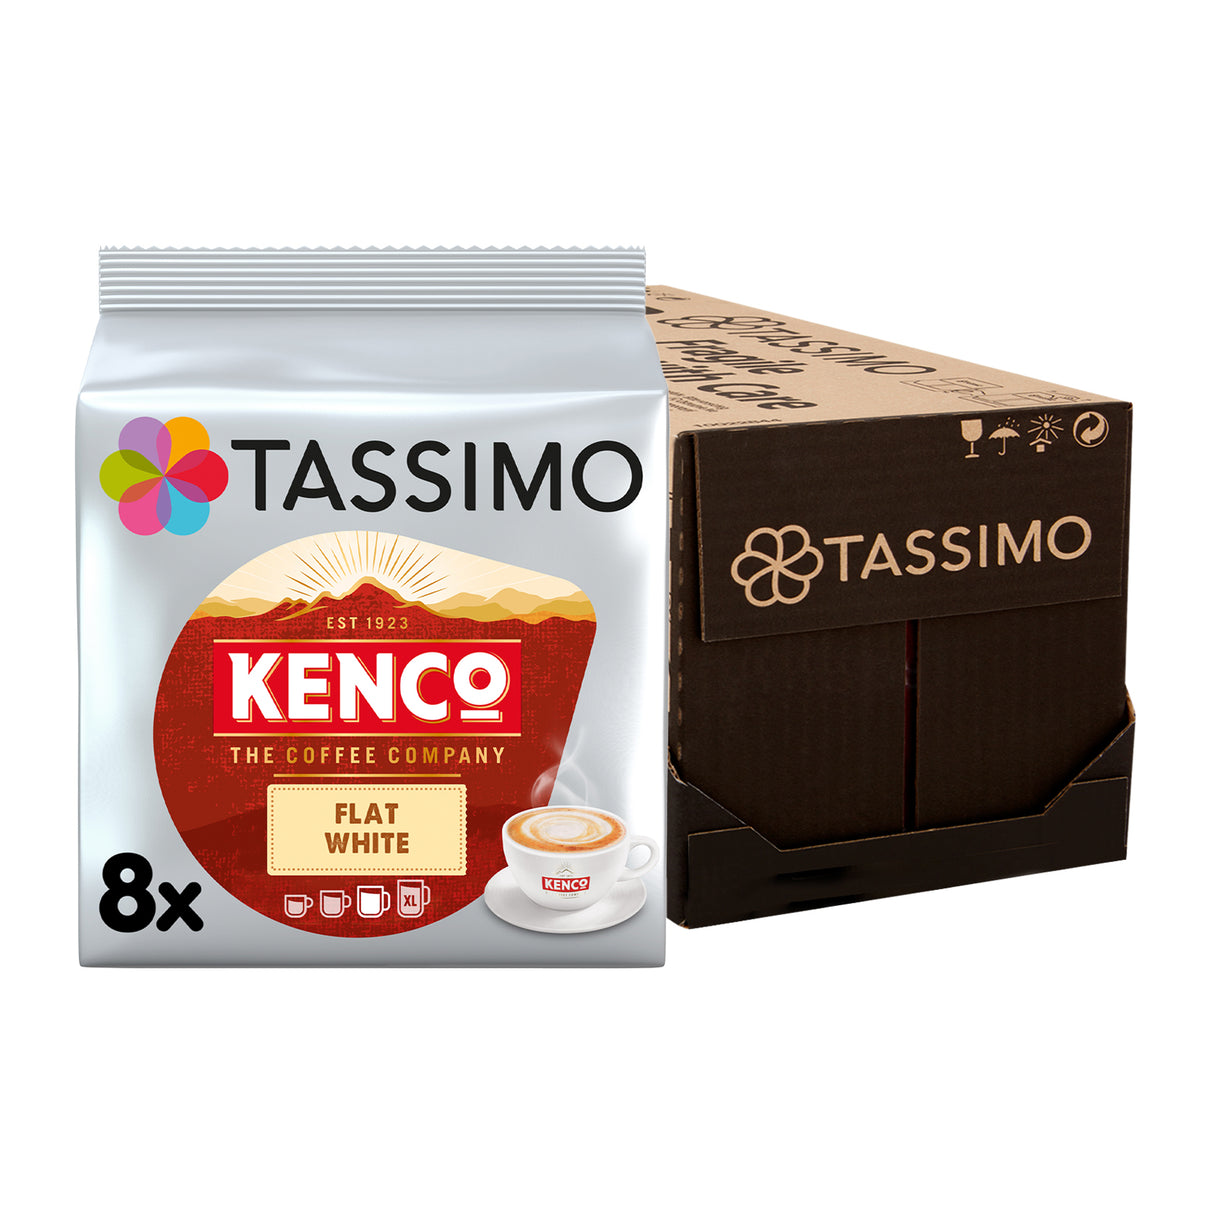 Tassimo Kenco Flat White Case Pack